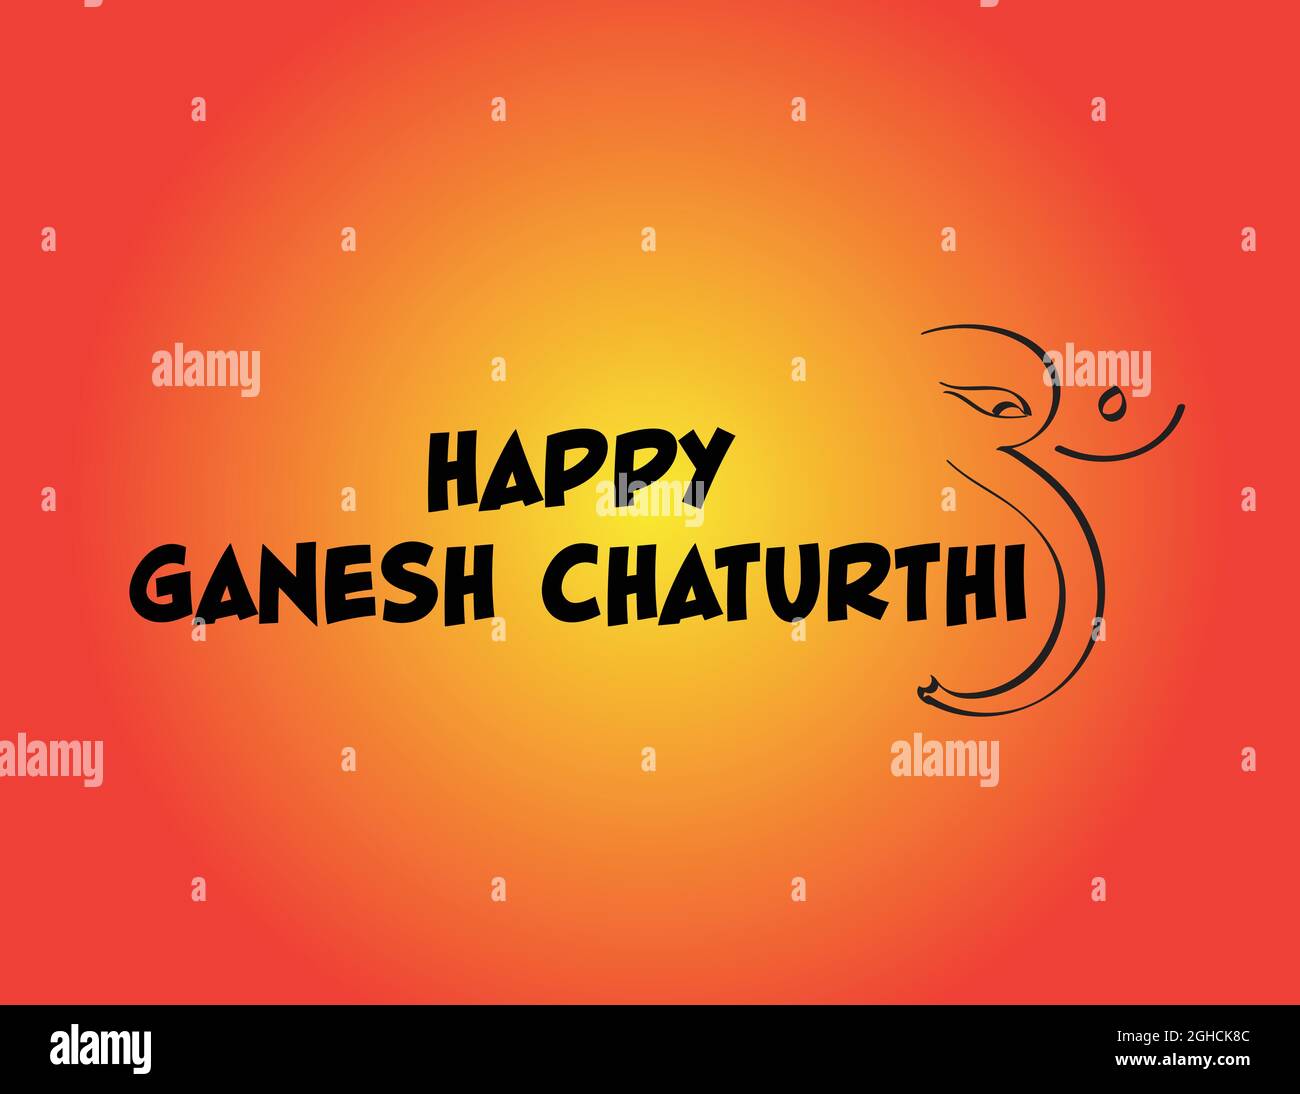 Ganesh chaturthi desidera disegno, saluto, Ganpati Bappa Morya Illustrazione Vettoriale